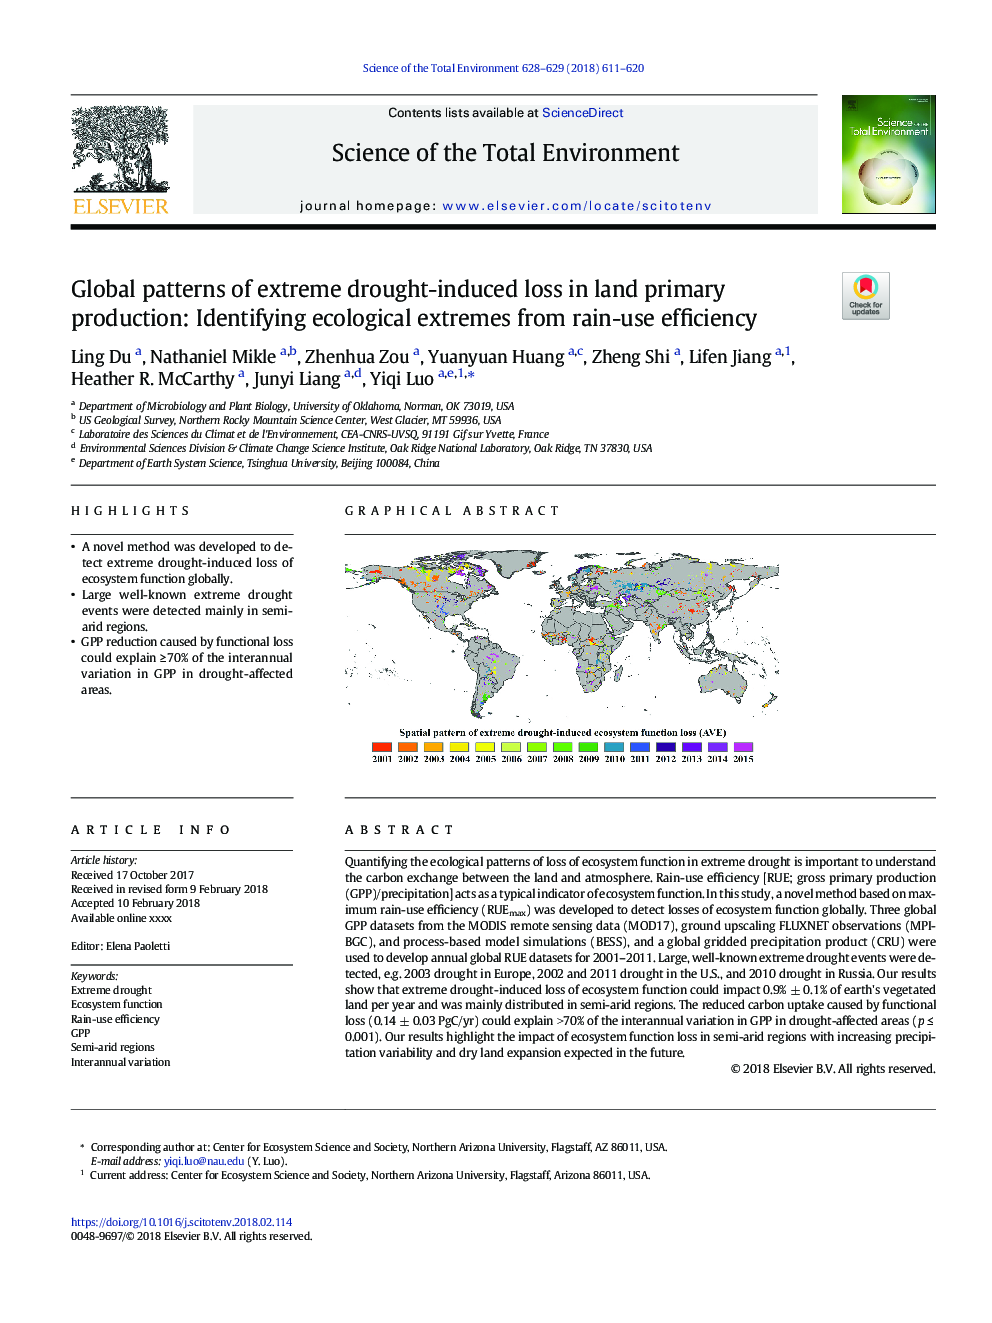 الگوهای جهانی از دست دادن ناشی از خشکسالی شدید در تولید اولیه زمین: شناسایی شدت اکولوژیکی از بهره وری استفاده از بارندگی 